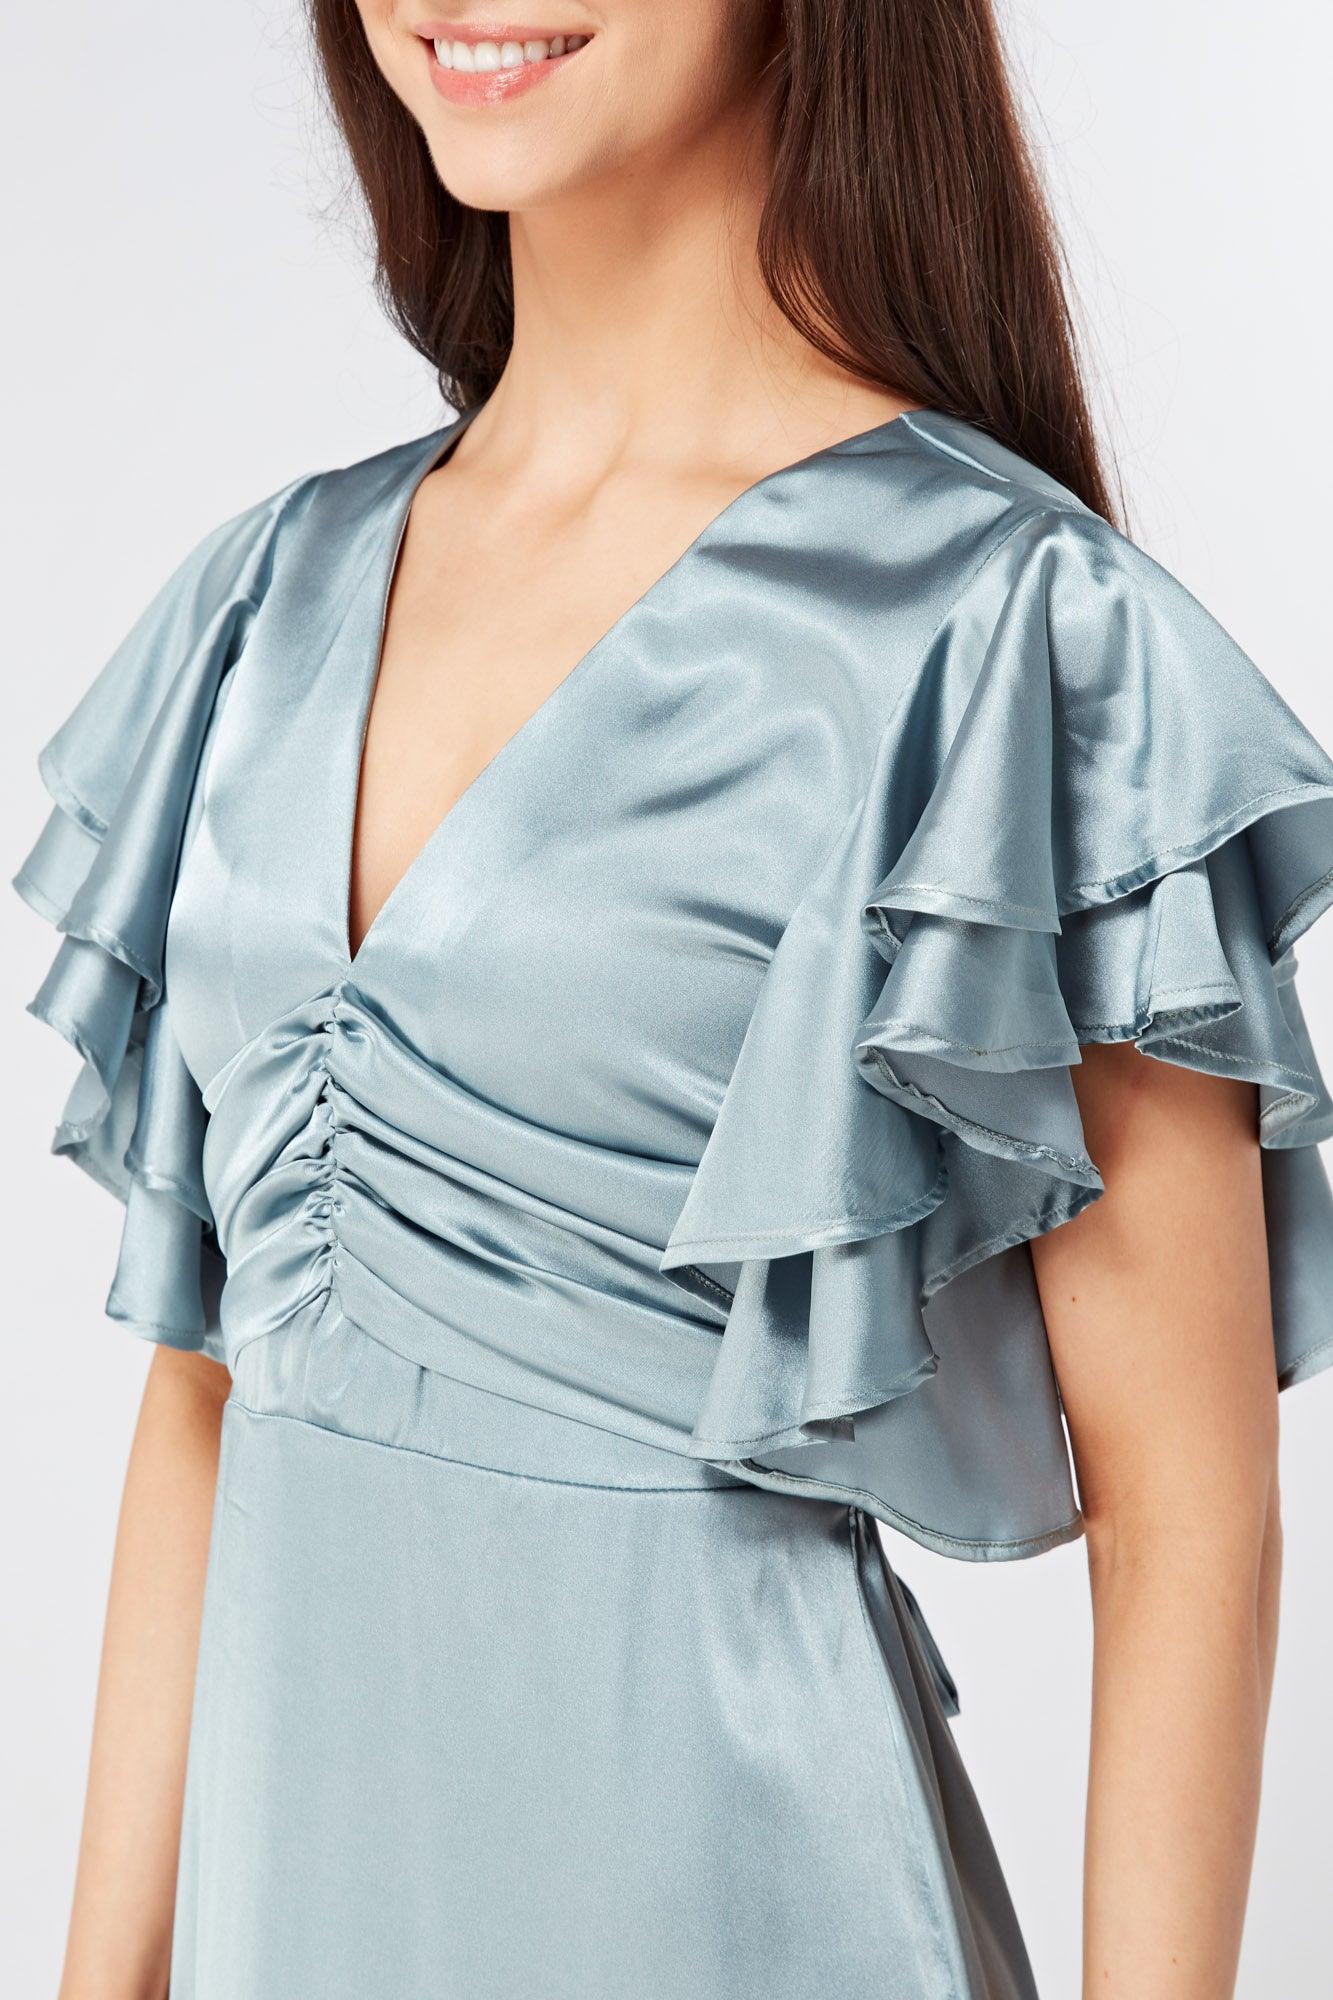 Cynthia Dusty Blue Satin Maxi Dress With Frill Sleeves - TAHLIRA